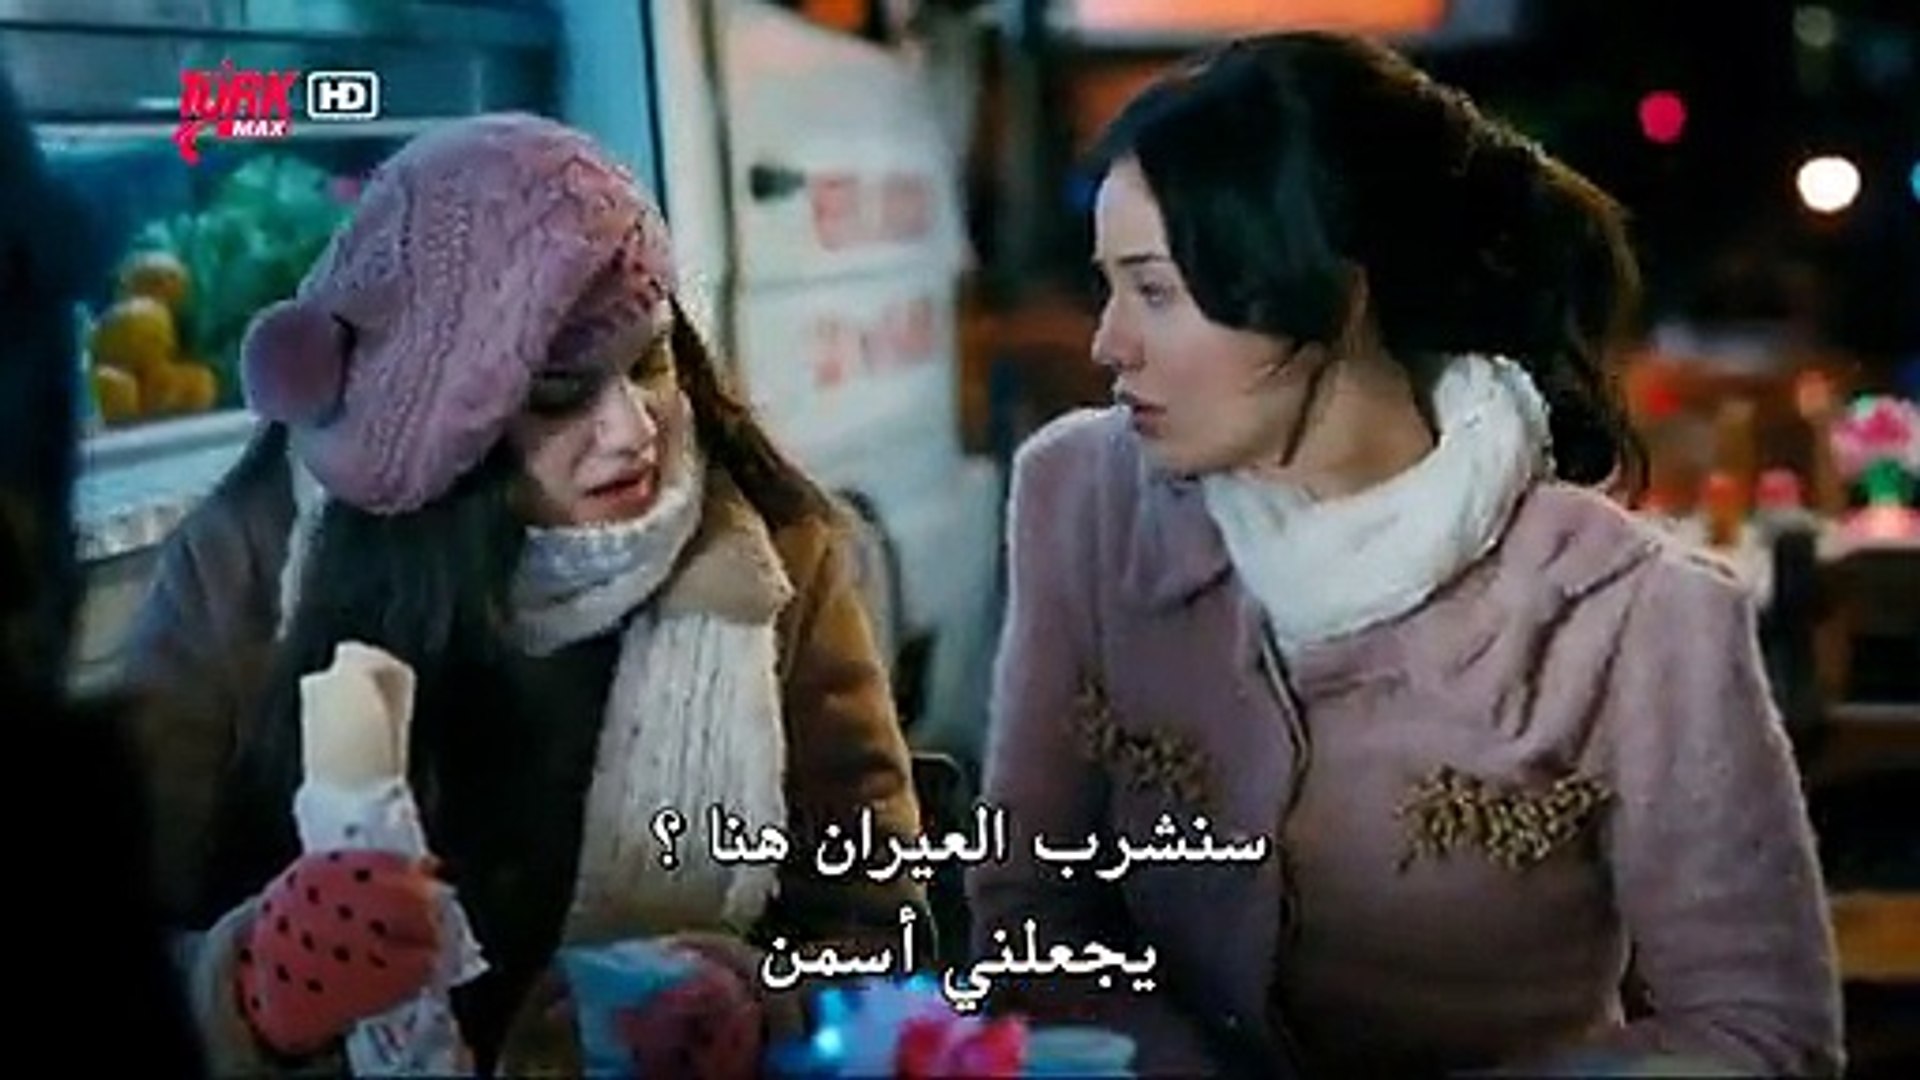 فيلم انت منزلي مترجم للعربية بجودة عالية (القسم 1) - فيديو Dailymotion